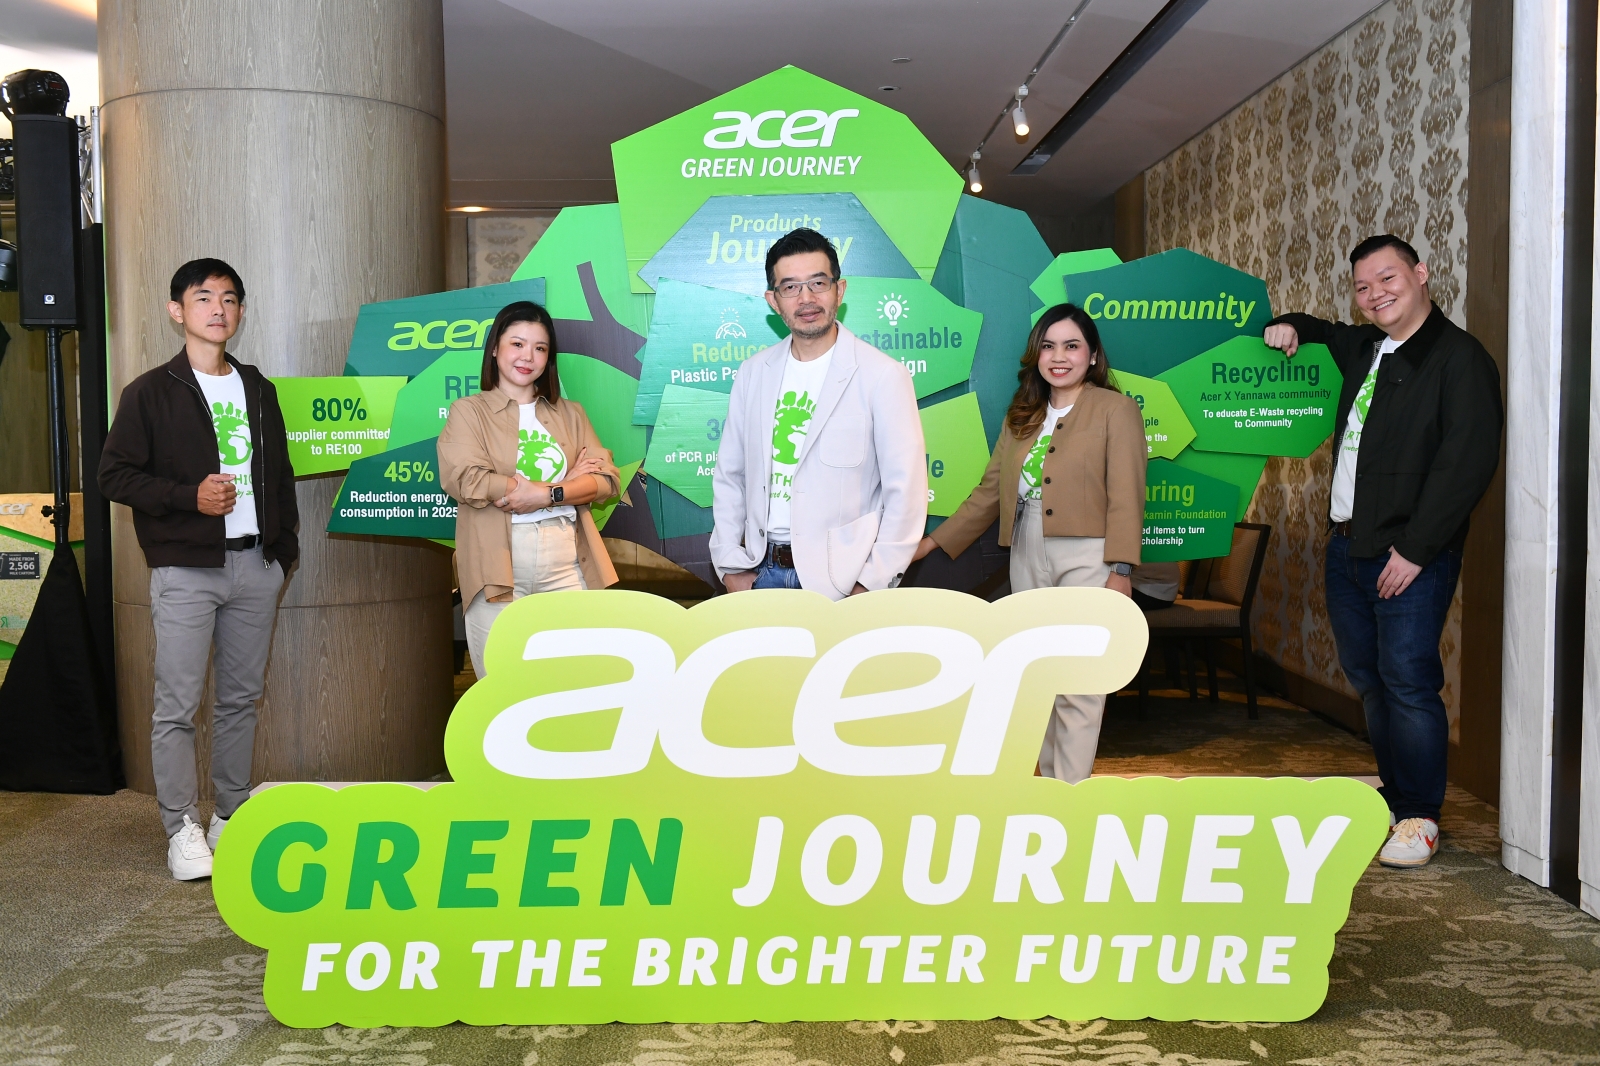 Acer เผยเส้นทางความยั่งยืนร่วมสร้างโลกสีเขียว มุ่งเดินโครงการ Earthion ให้ความสำคัญด้านสิ่งแวดล้อม สร้างความตระหนักรู้พนักงาน พาร์ทเนอร์และลูกค้า 